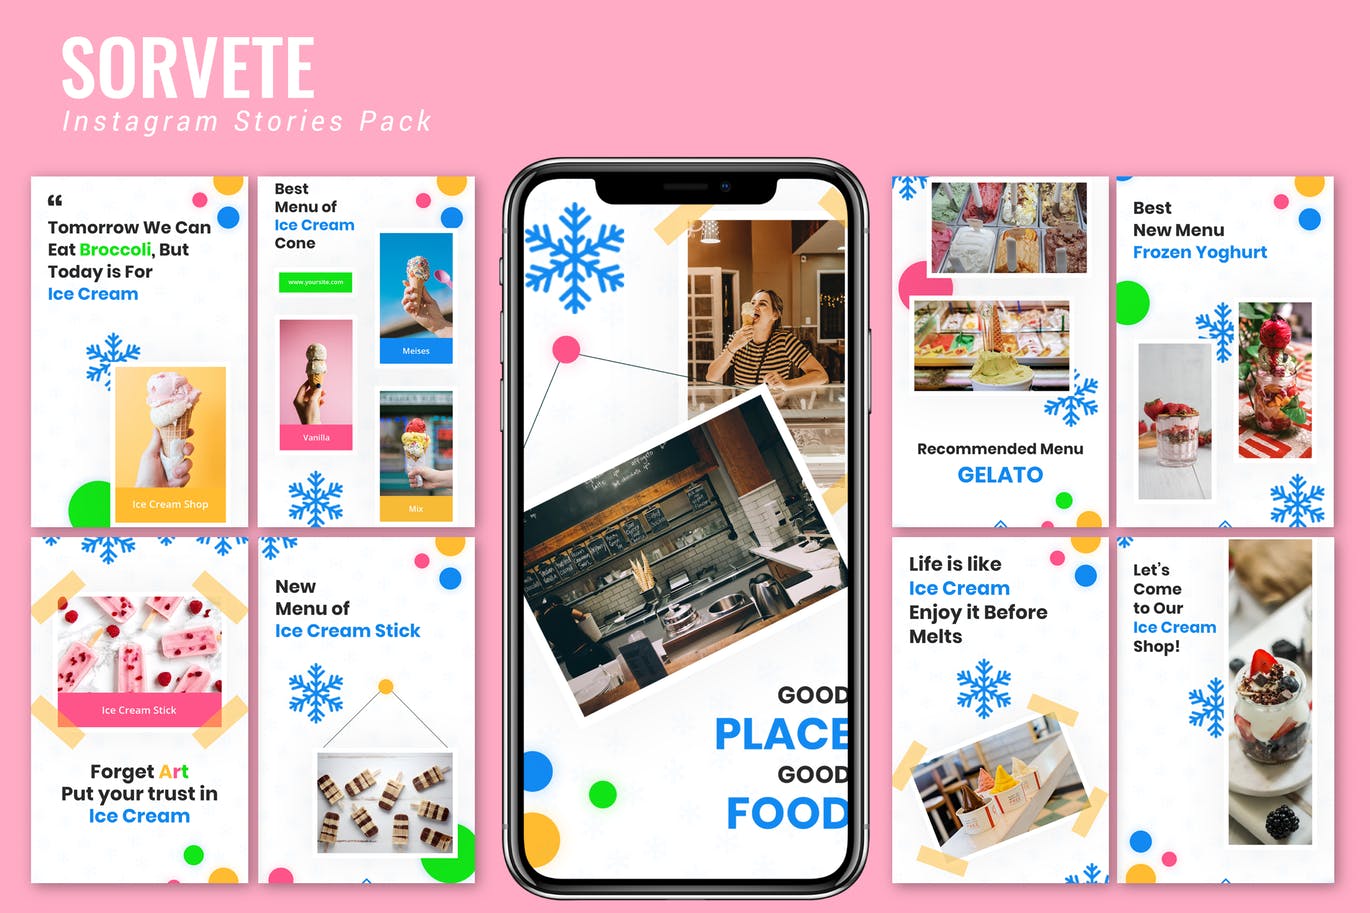 蓝色雪花装饰点缀Instagram品牌故事设计模板第一素材精选 Sorvete – Instagram Story Pack插图